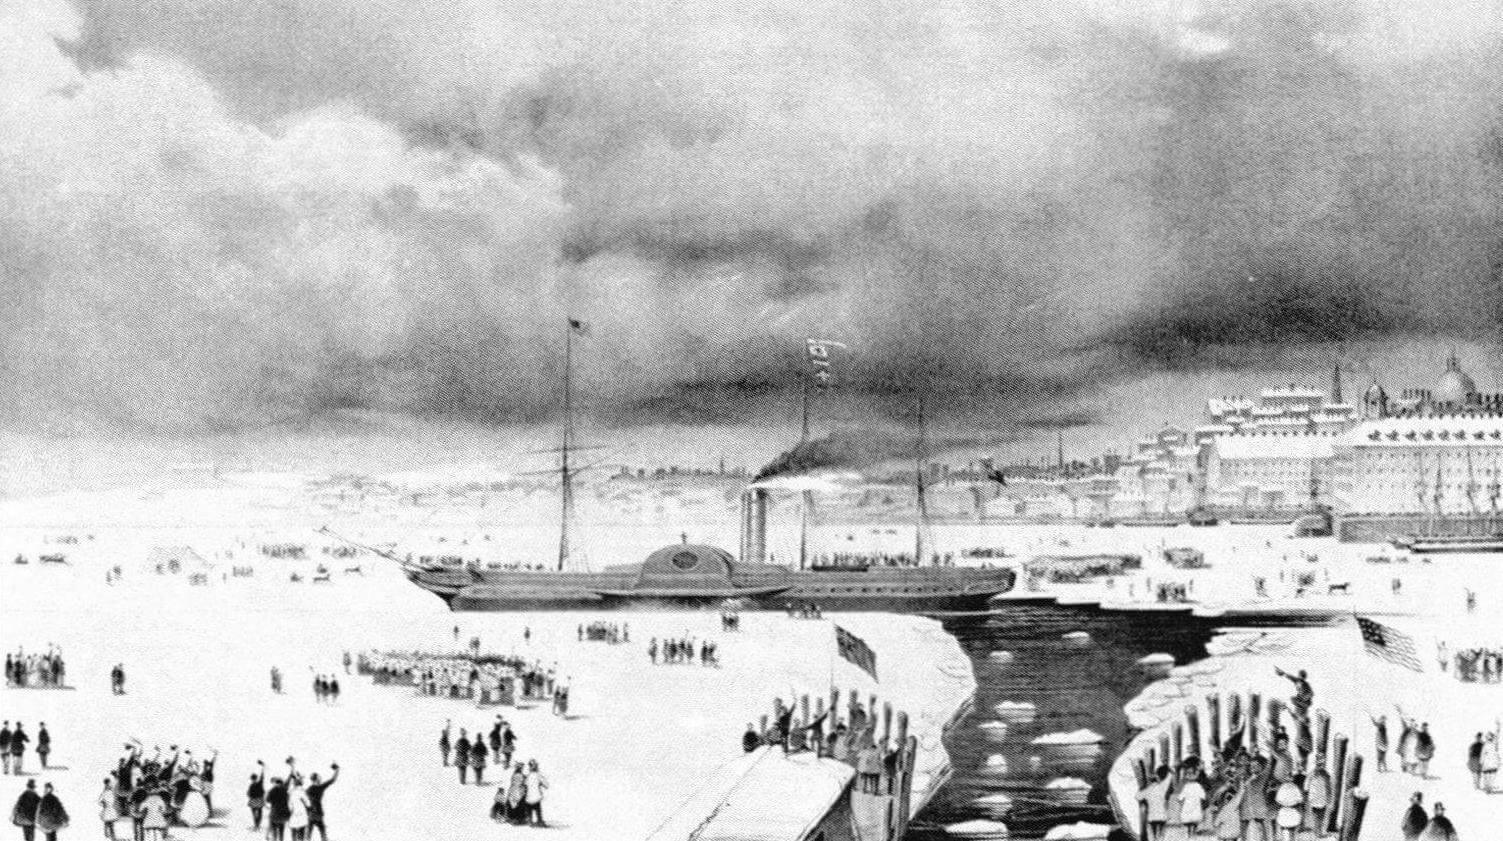 «Британния» выхолит из Бостона по каналу, проделанному горожанами во льду, 3 февраля 1844 года